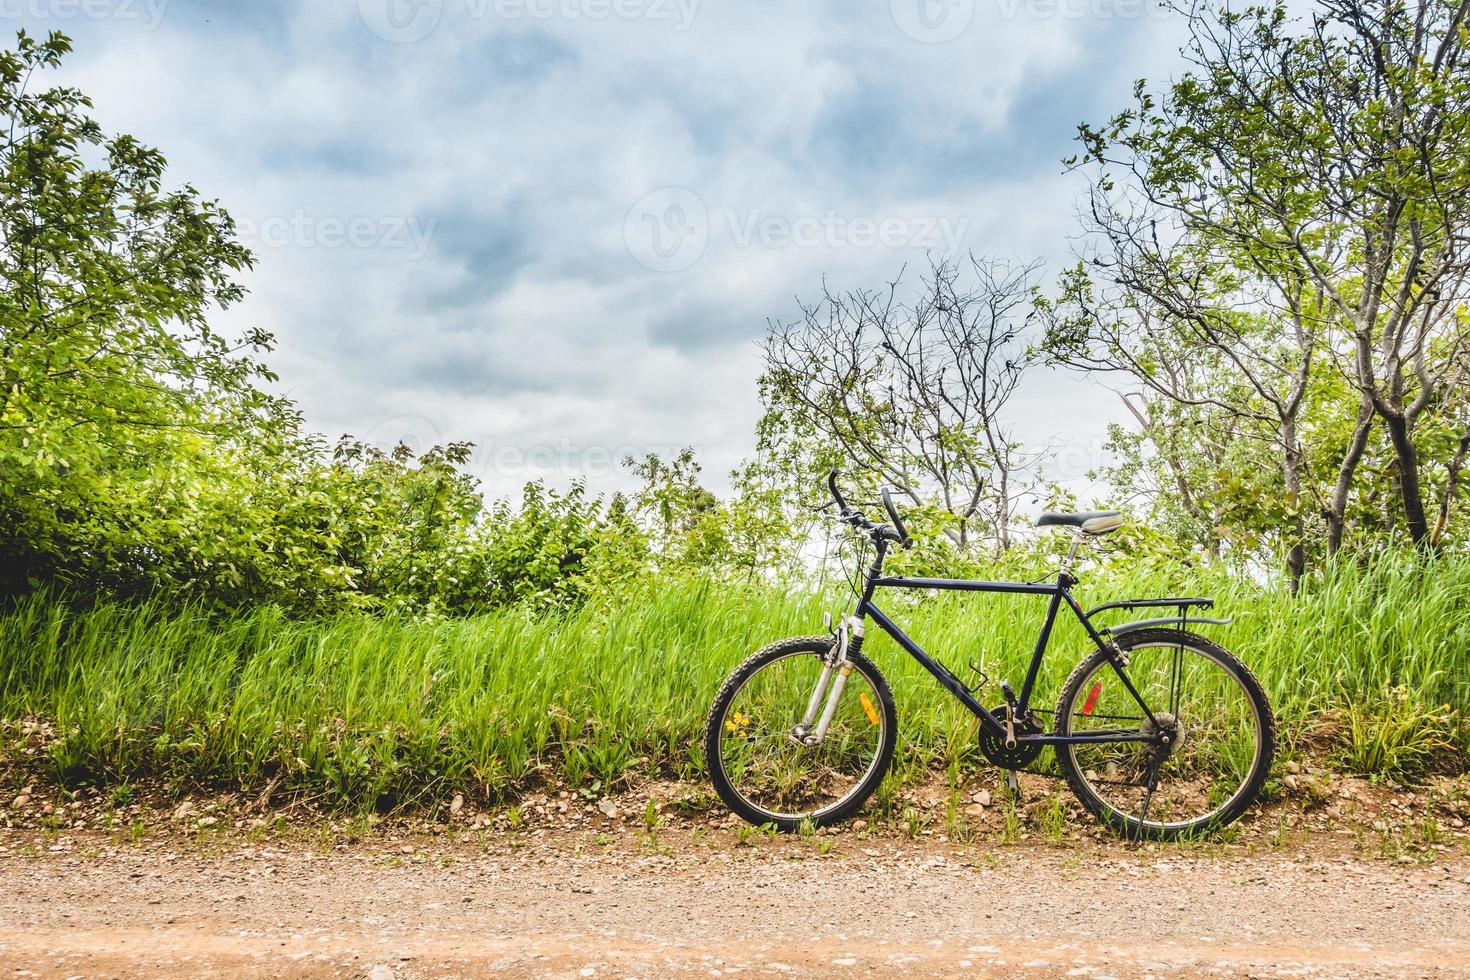 bici parcheggiata sul ciglio di una strada sterrata con campo sullo sfondo foto